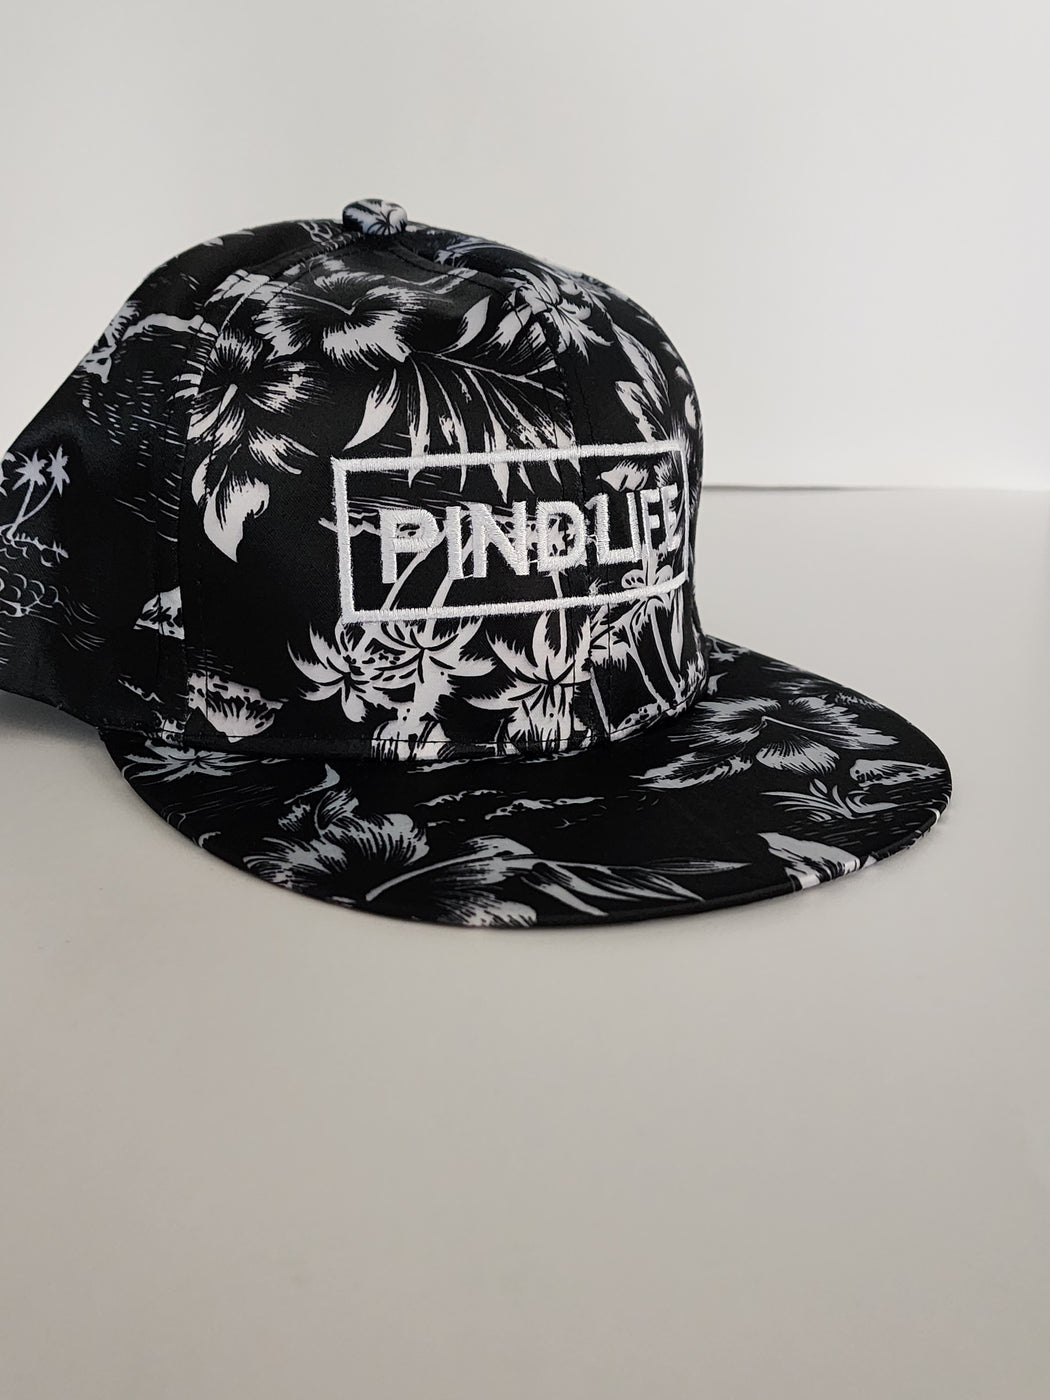 Pindlife Exclusive Floral Pattern Baseball Hats - PindLife